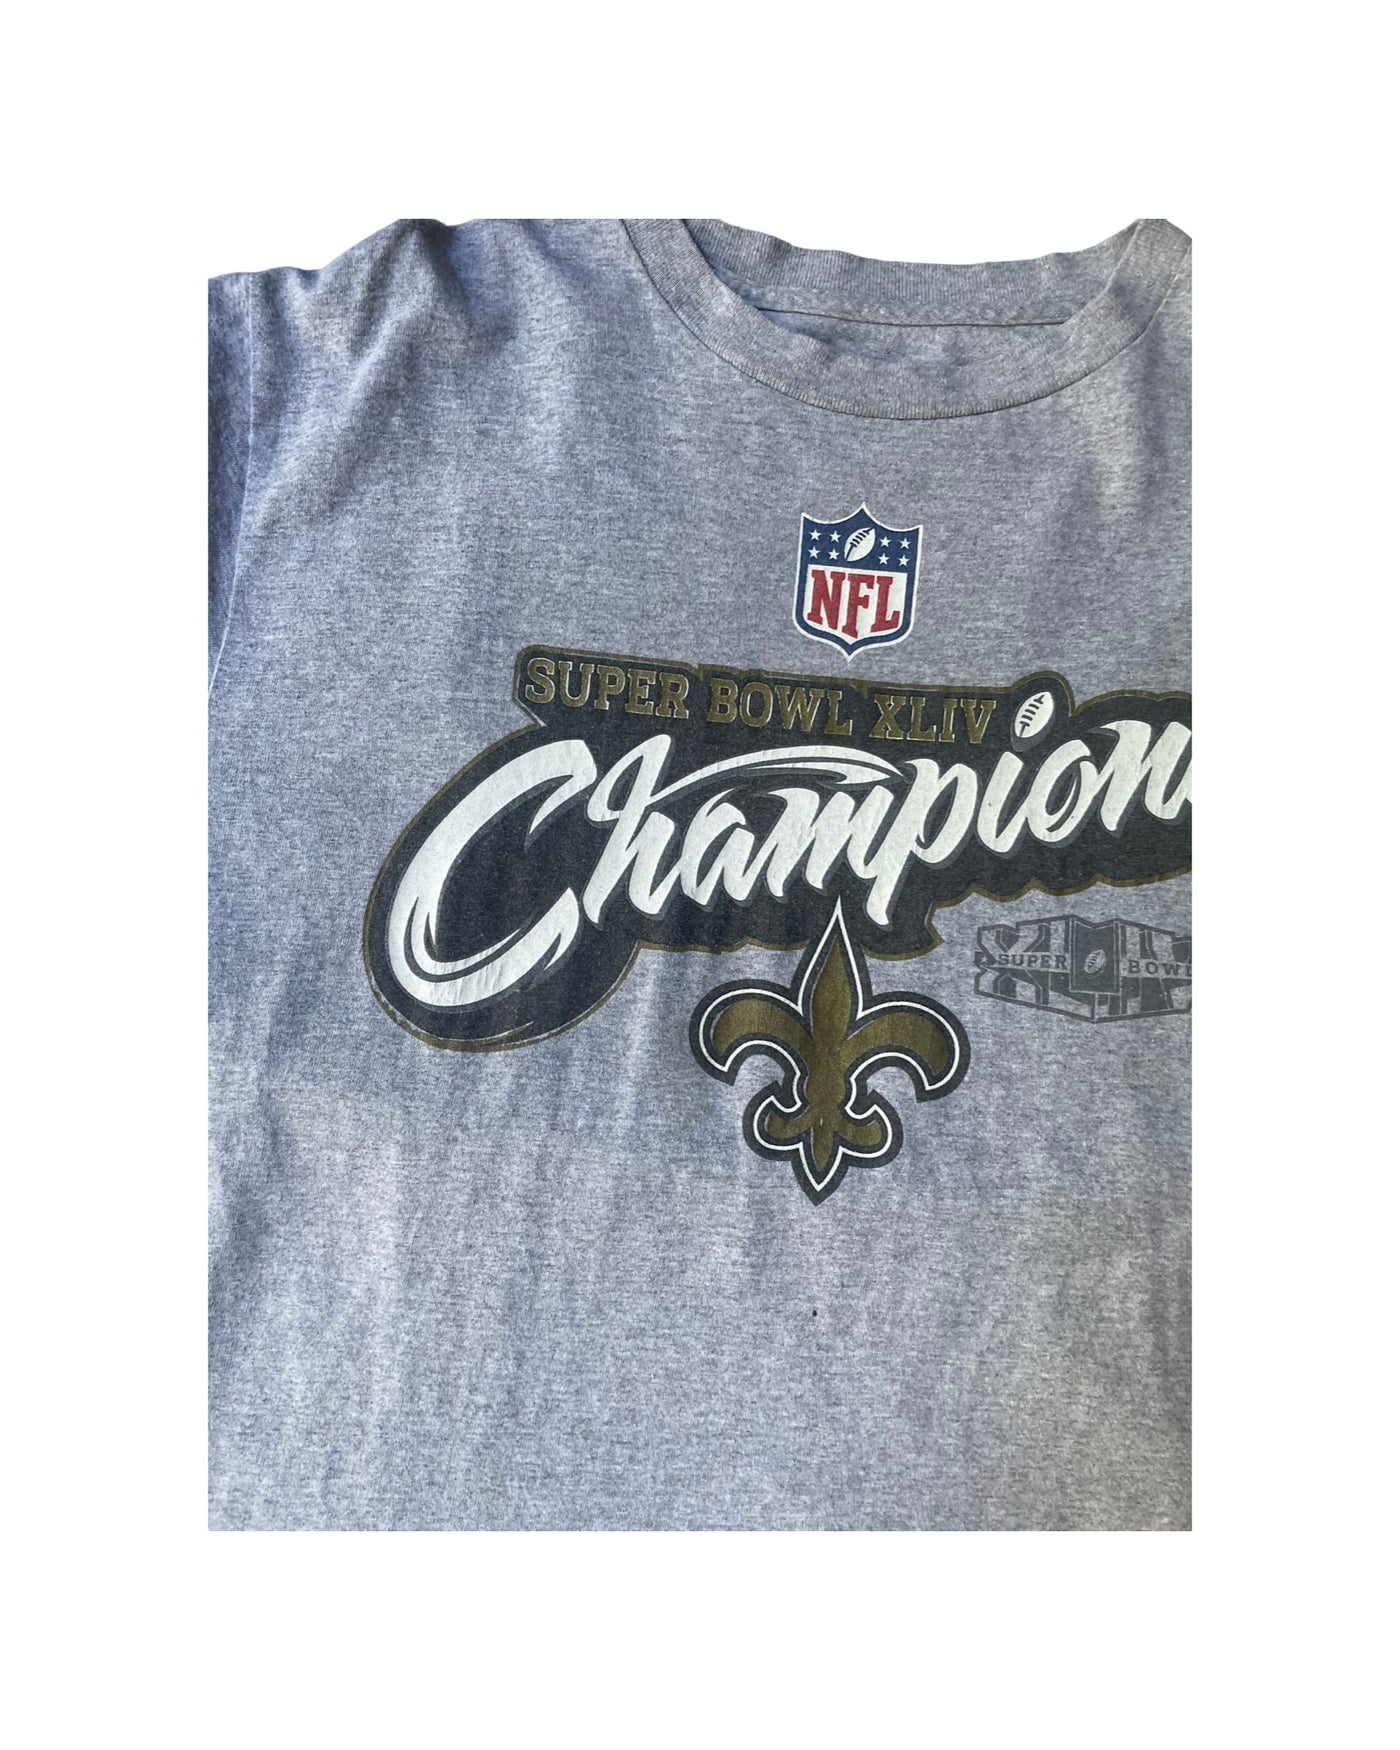 Vintage NFL Saints Super Bowl T-Shirt